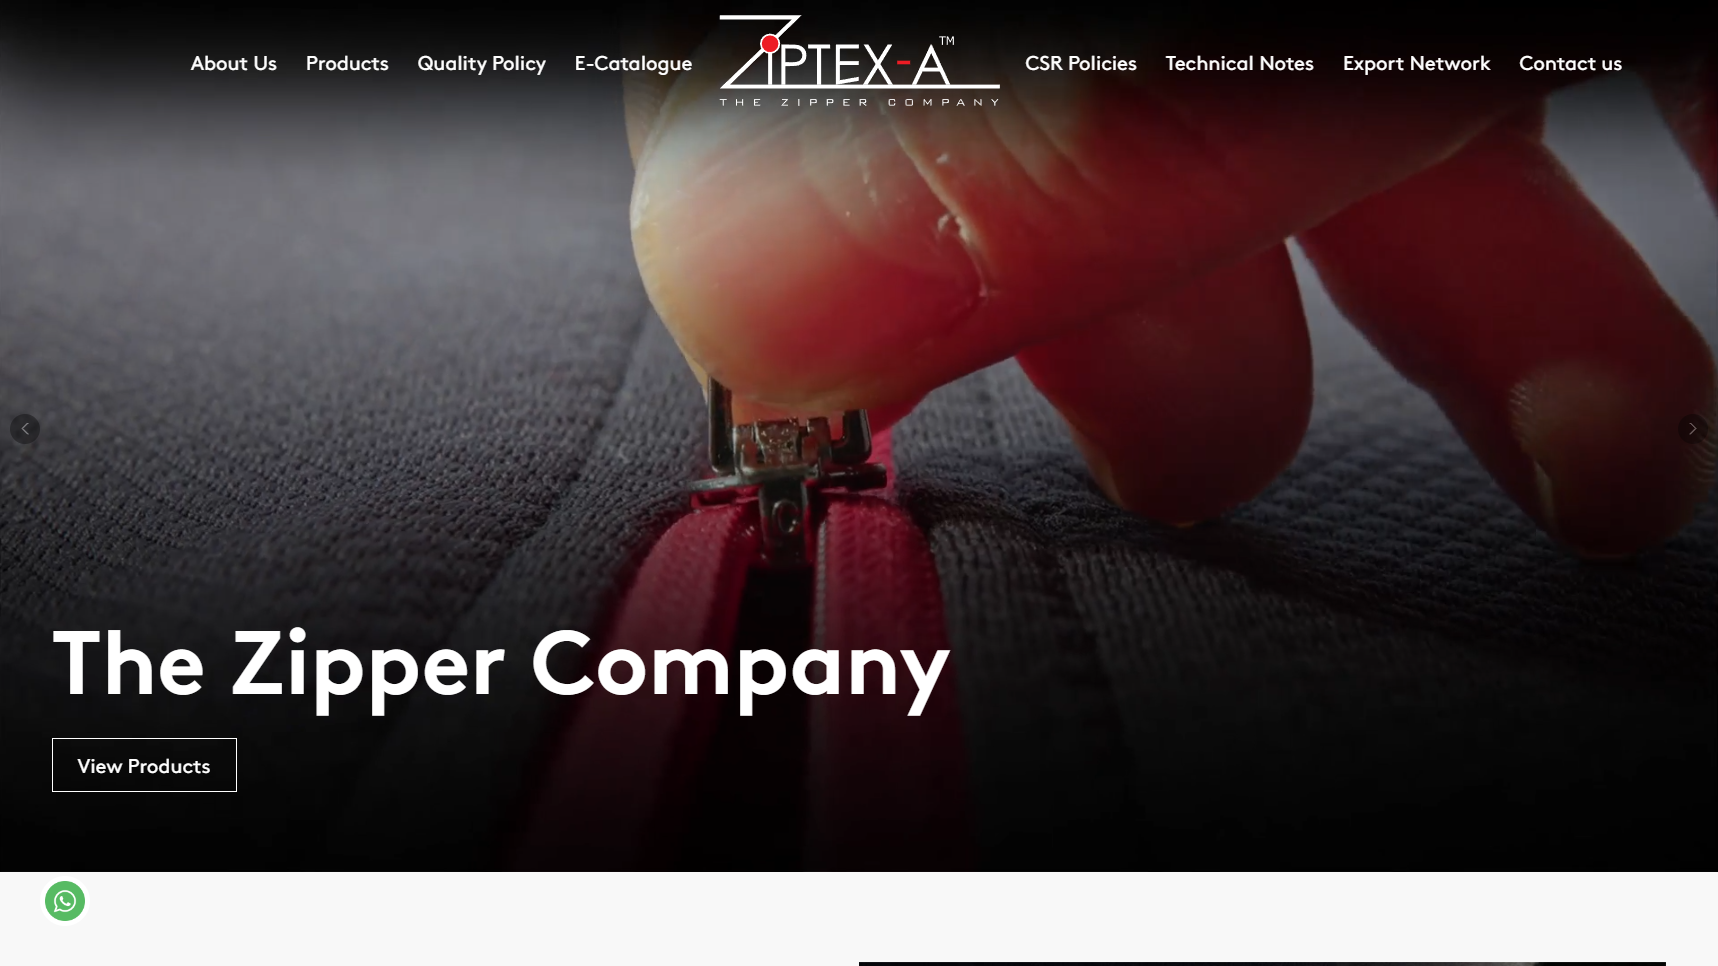 Ziptex - Zipper Manufacturer